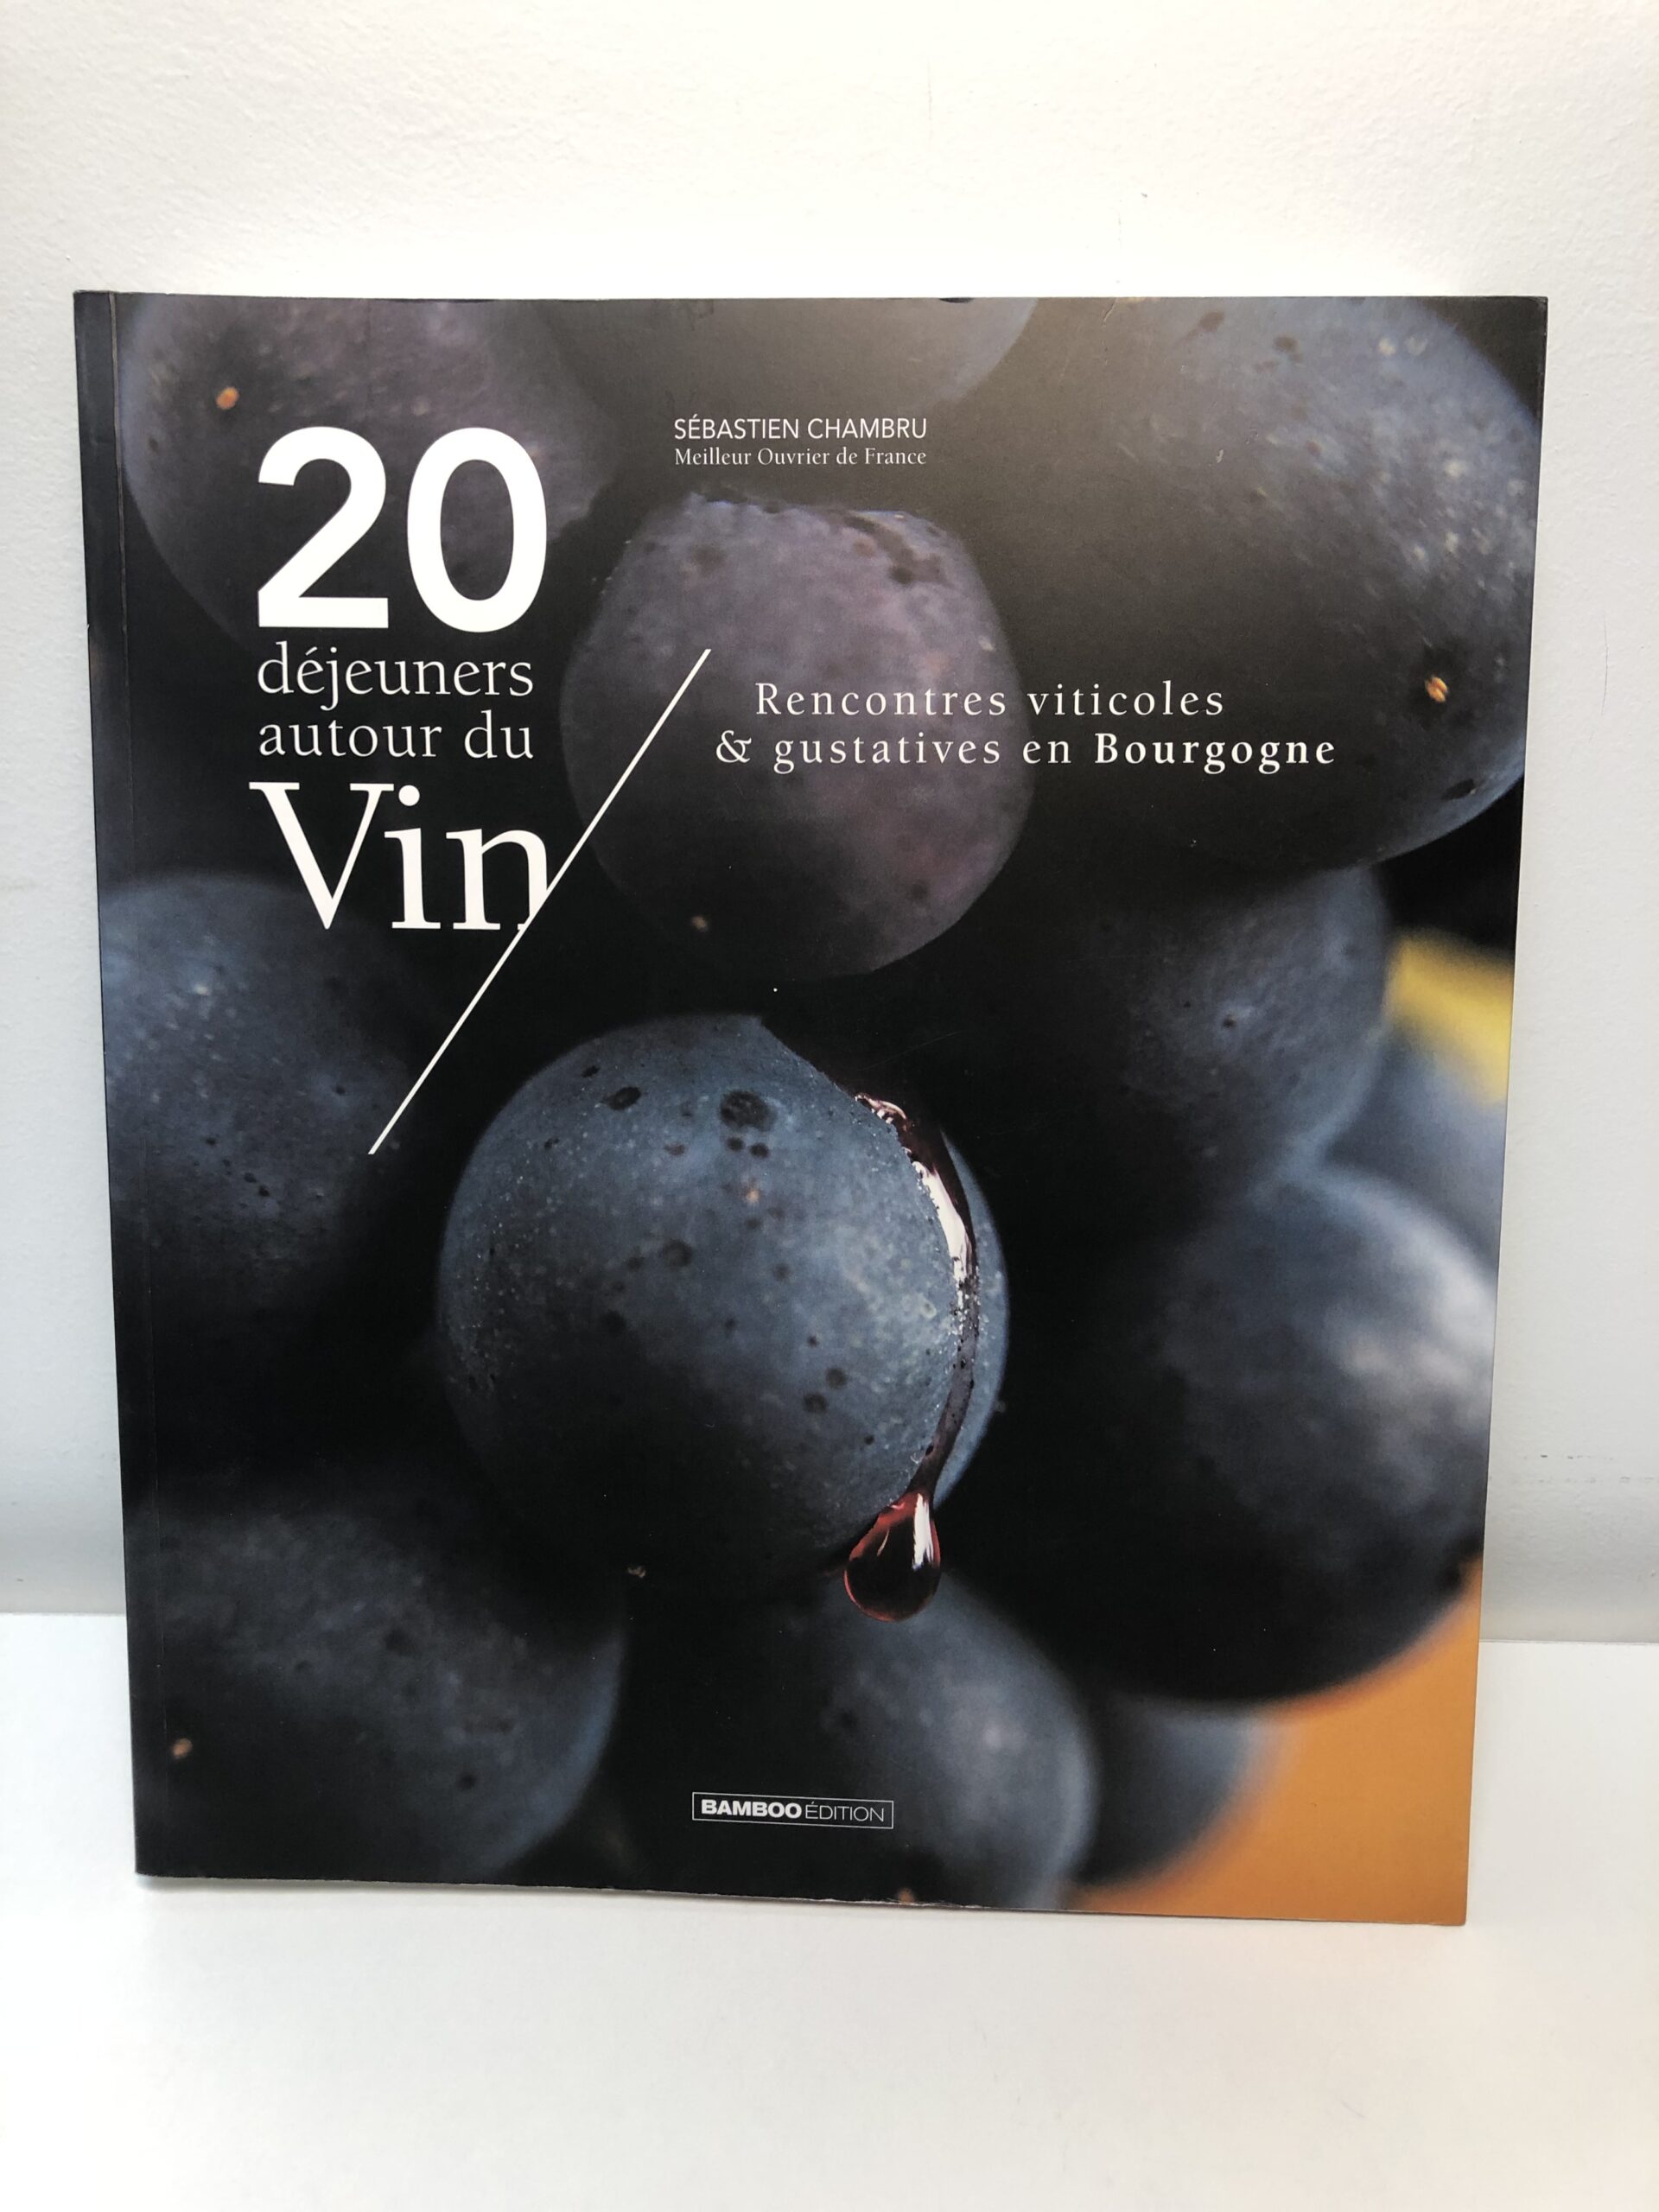 Livre “20 déjeuners autour du vin” de Sébastien Chambru